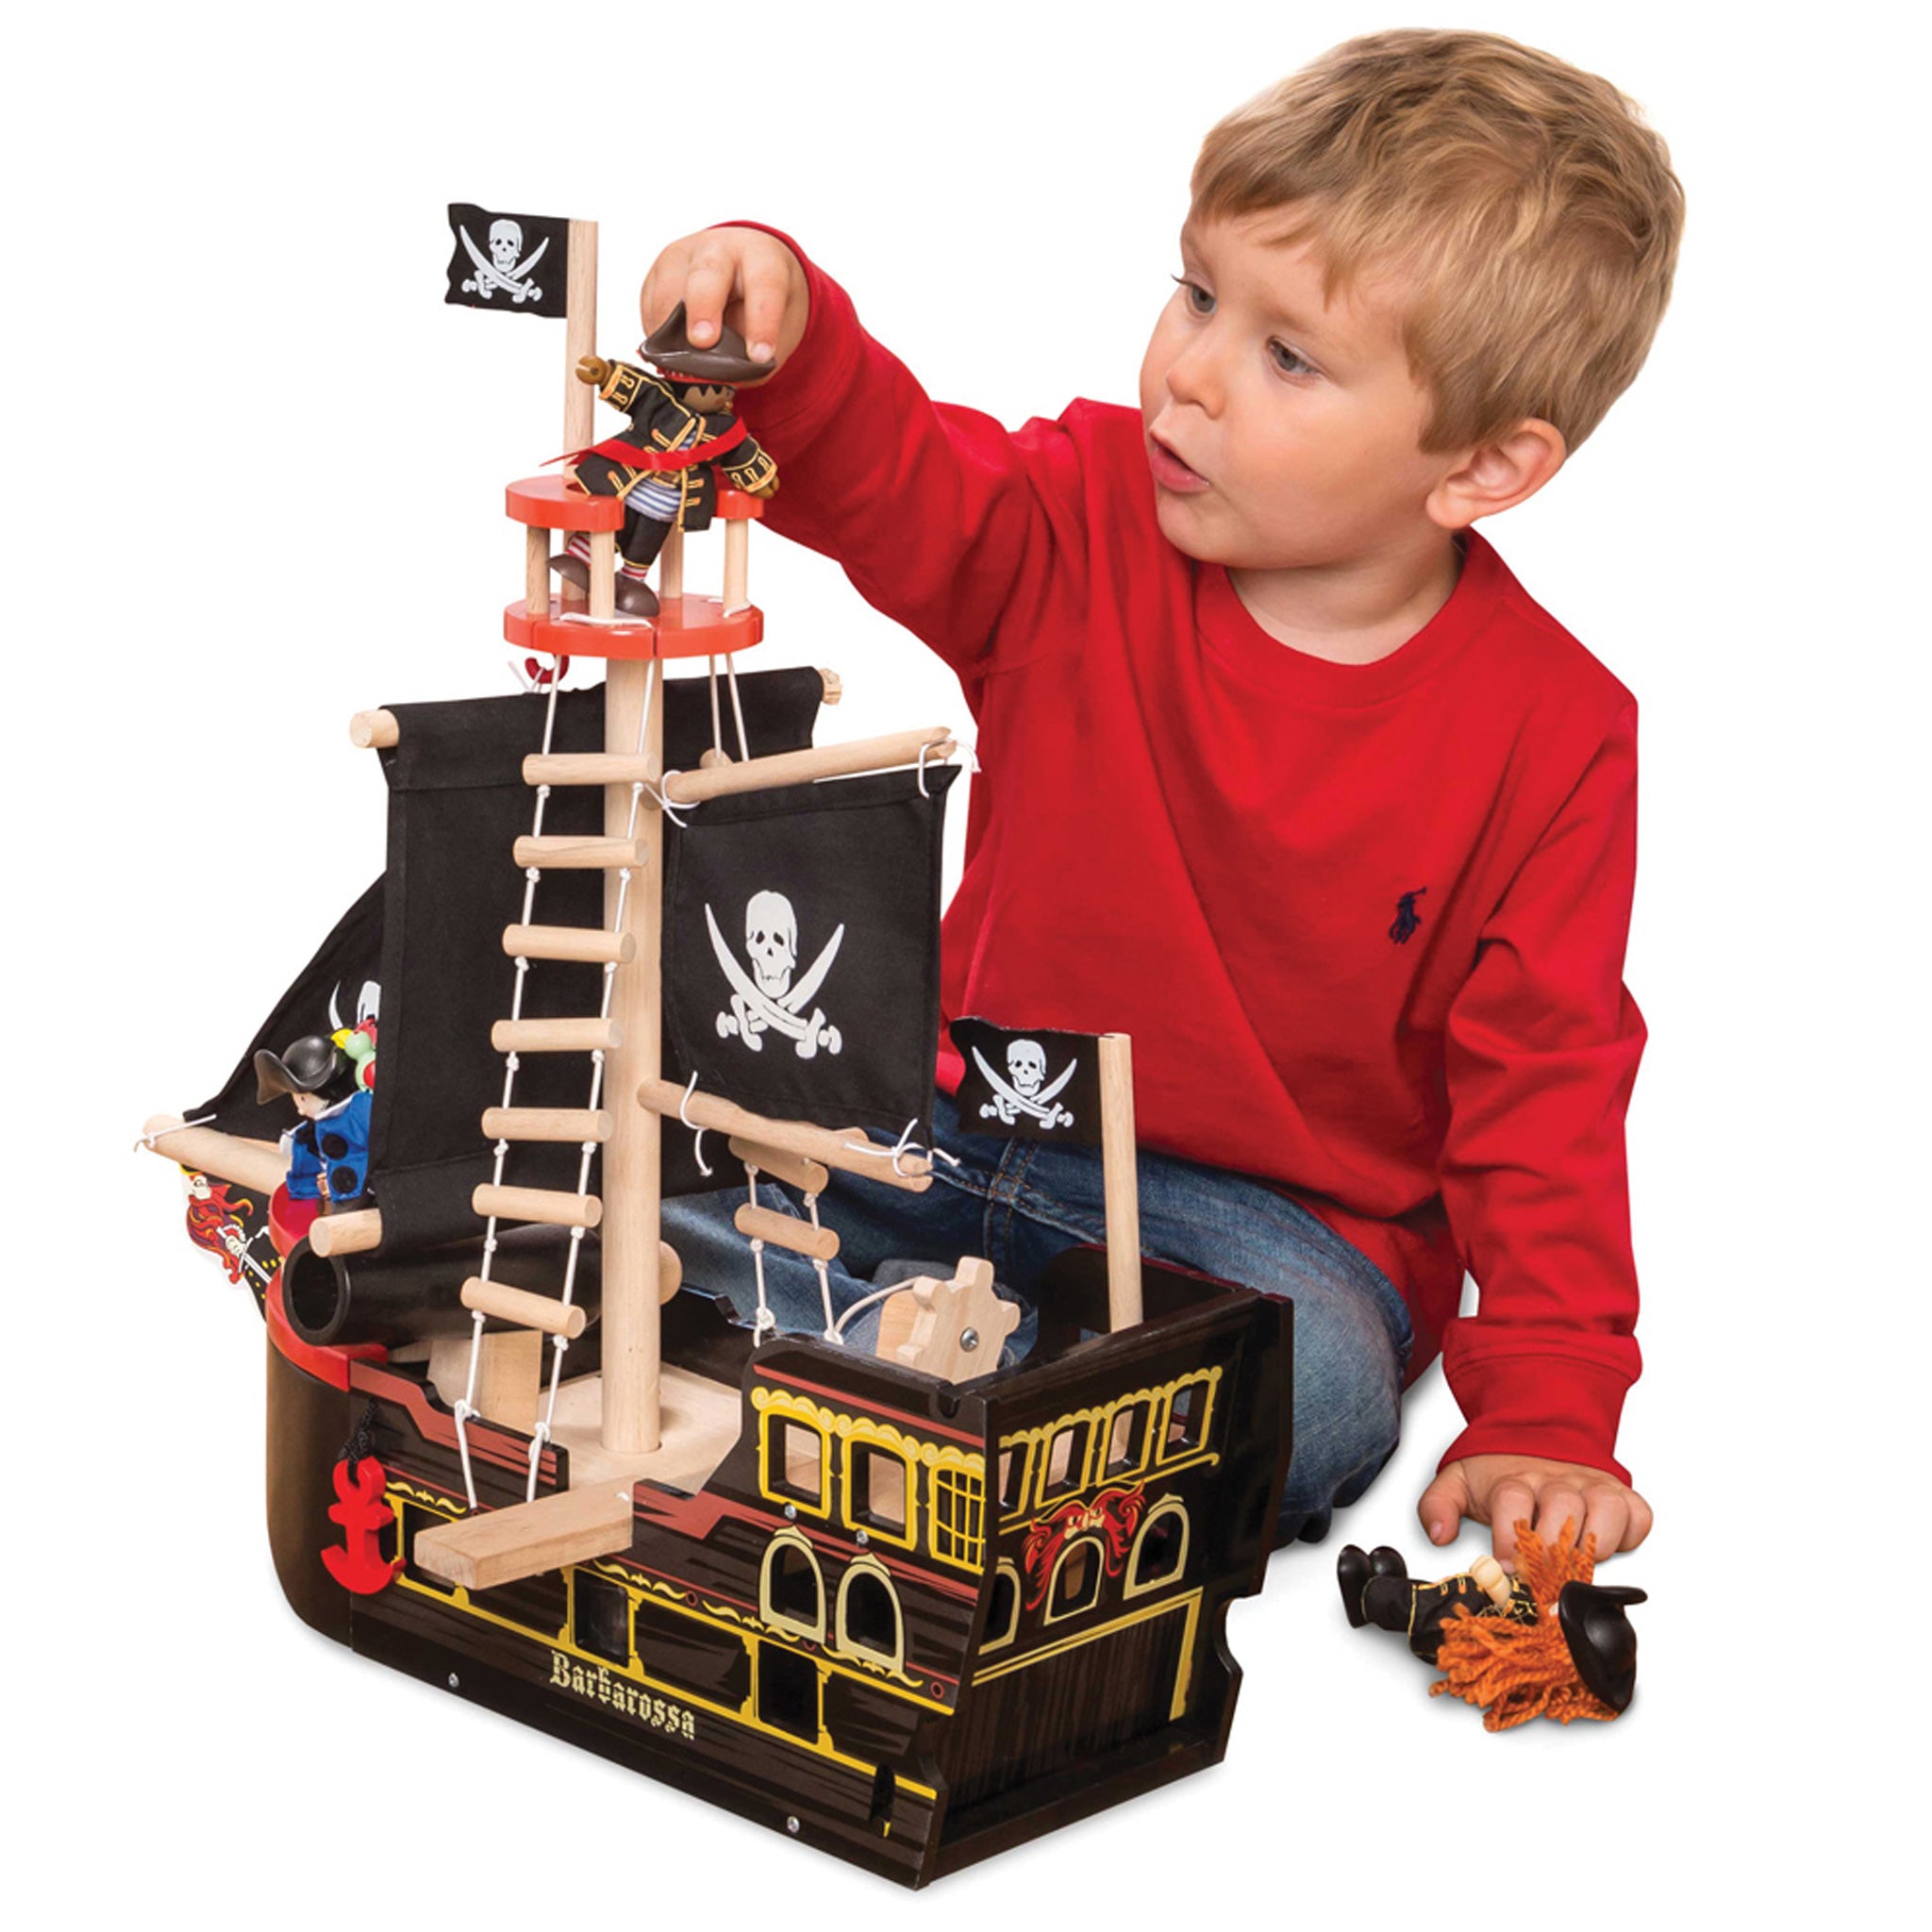 Купить подарок мальчику 9. Игровой набор пиратский корабль Барбаросса le Toy van tv246. Пиратский корабль Барбаросса, le Toy van. Le Toy van пиратский корабль. Подарок мальчику.